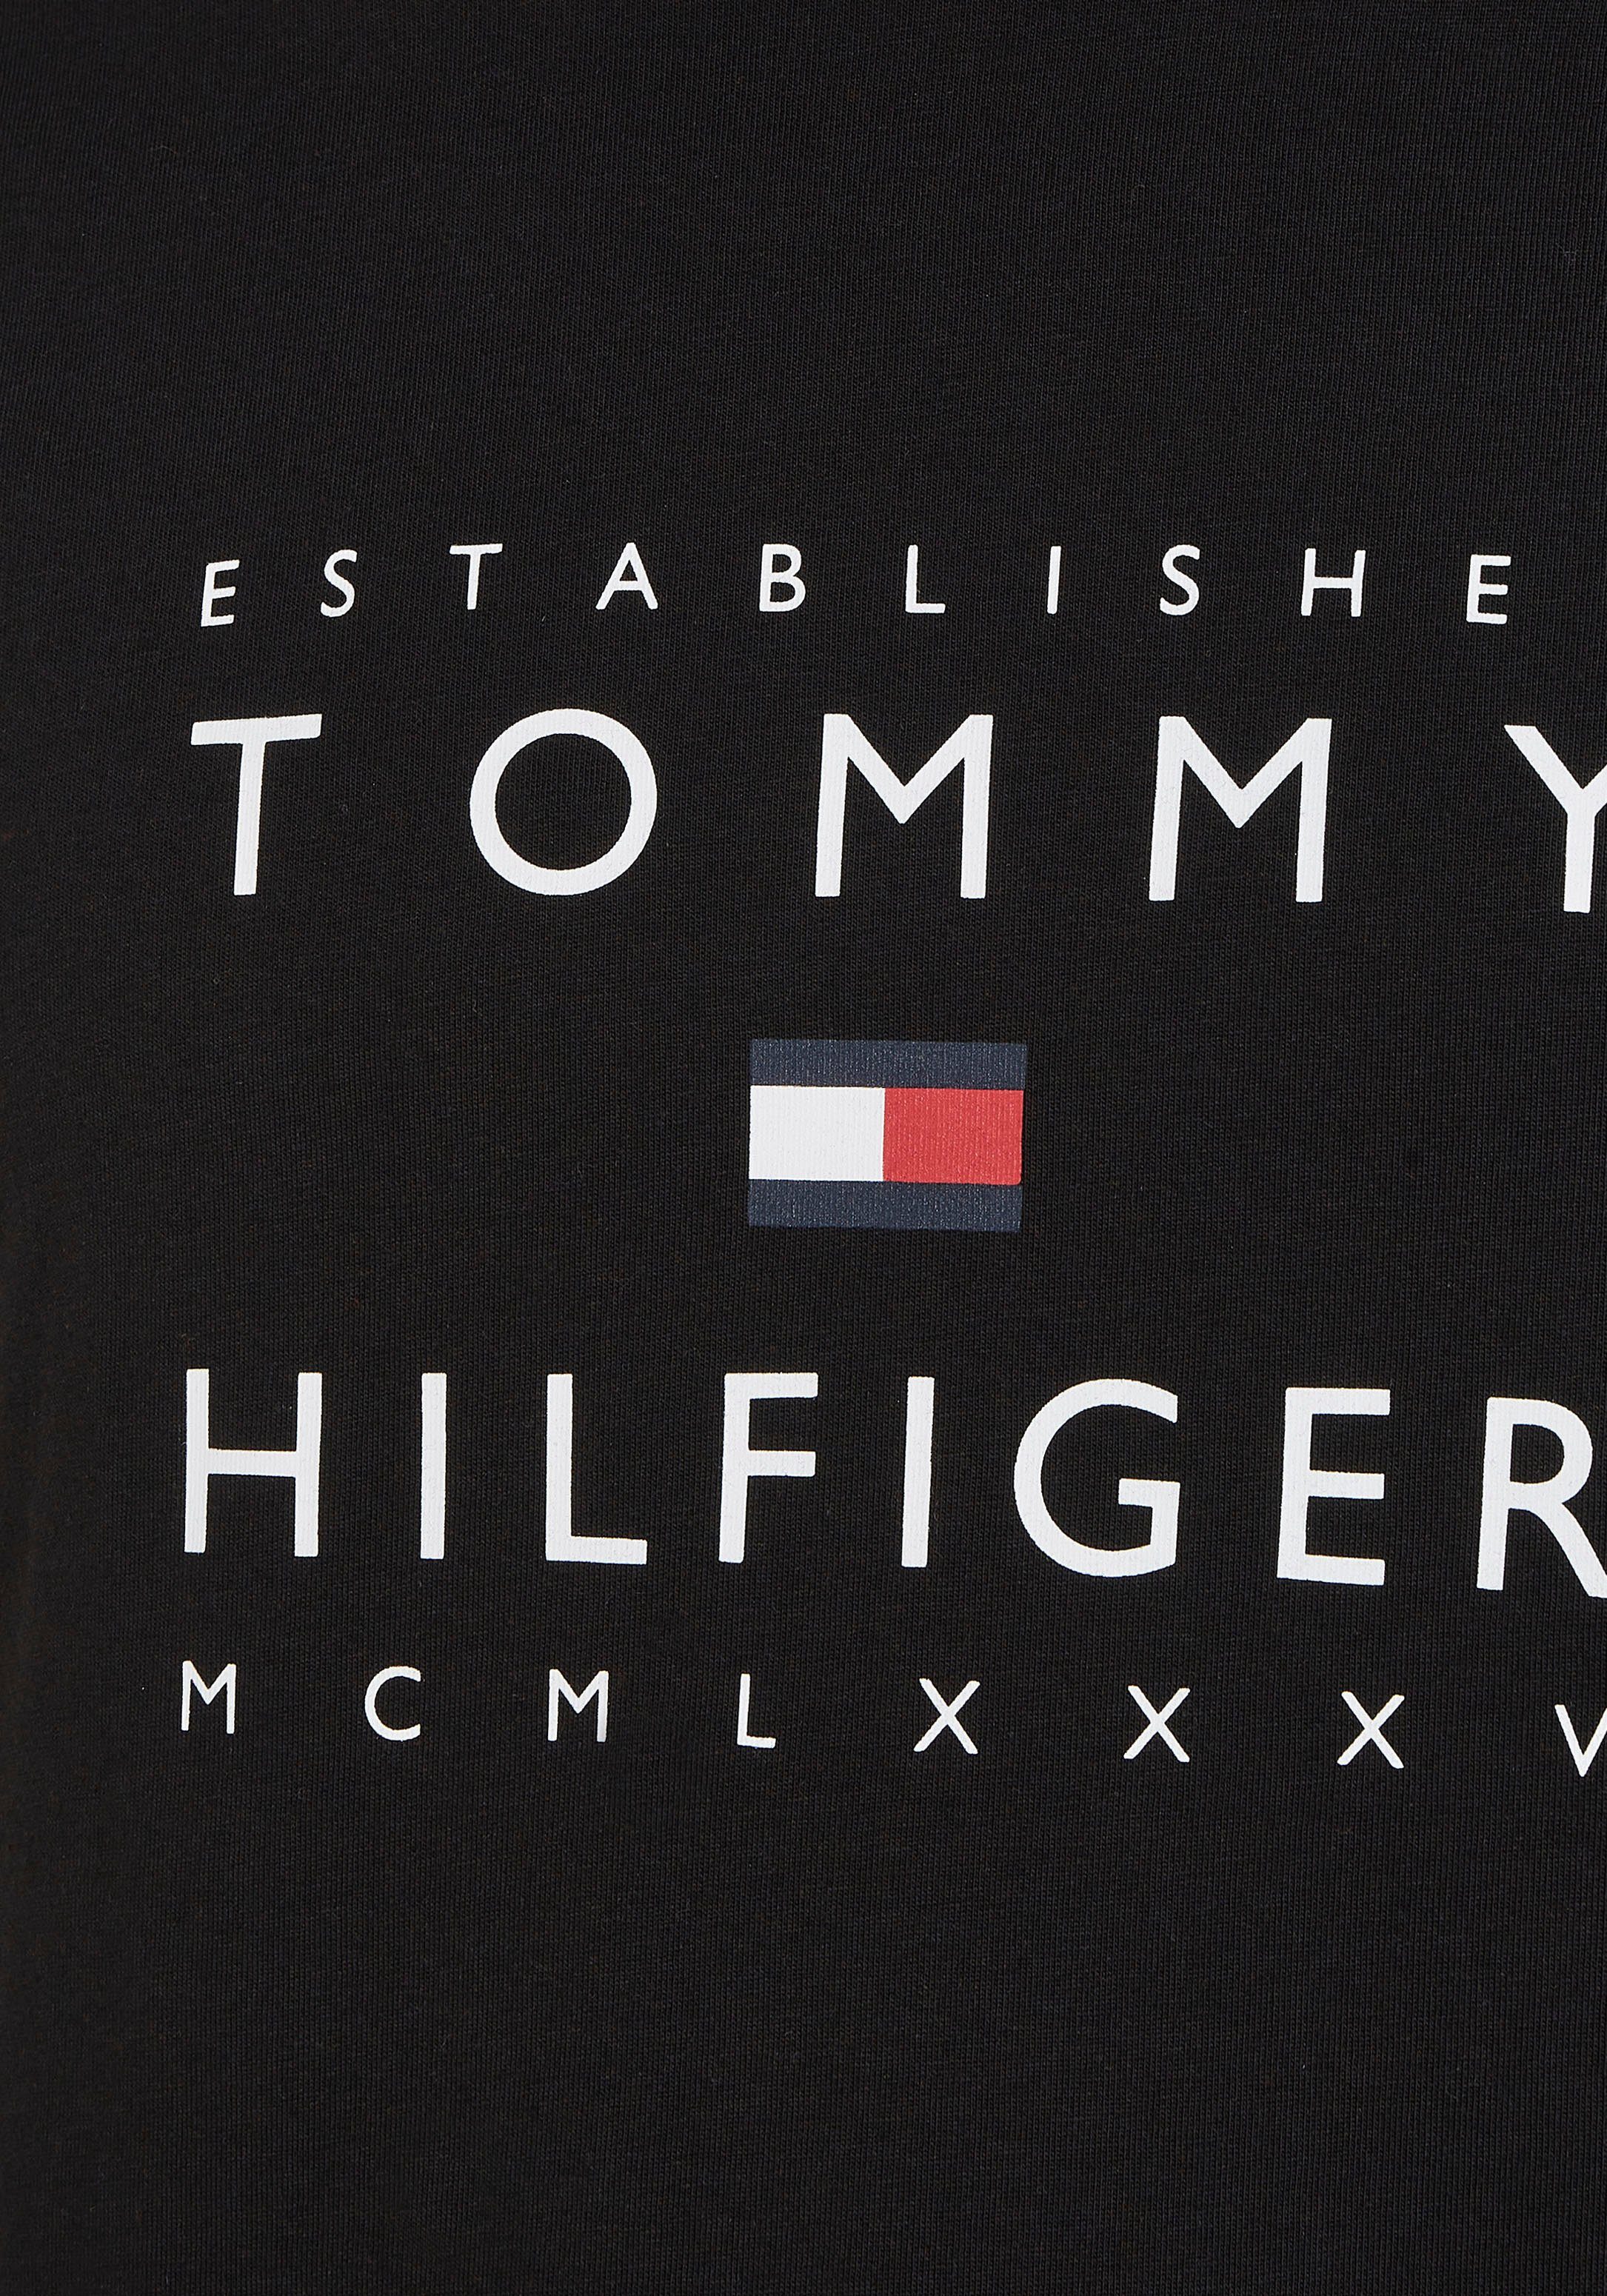 am Labelfarben mit STACKED T-Shirt Rippsband Ausschnitt ESTABLISHED Tommy in TEE Black Hilfiger